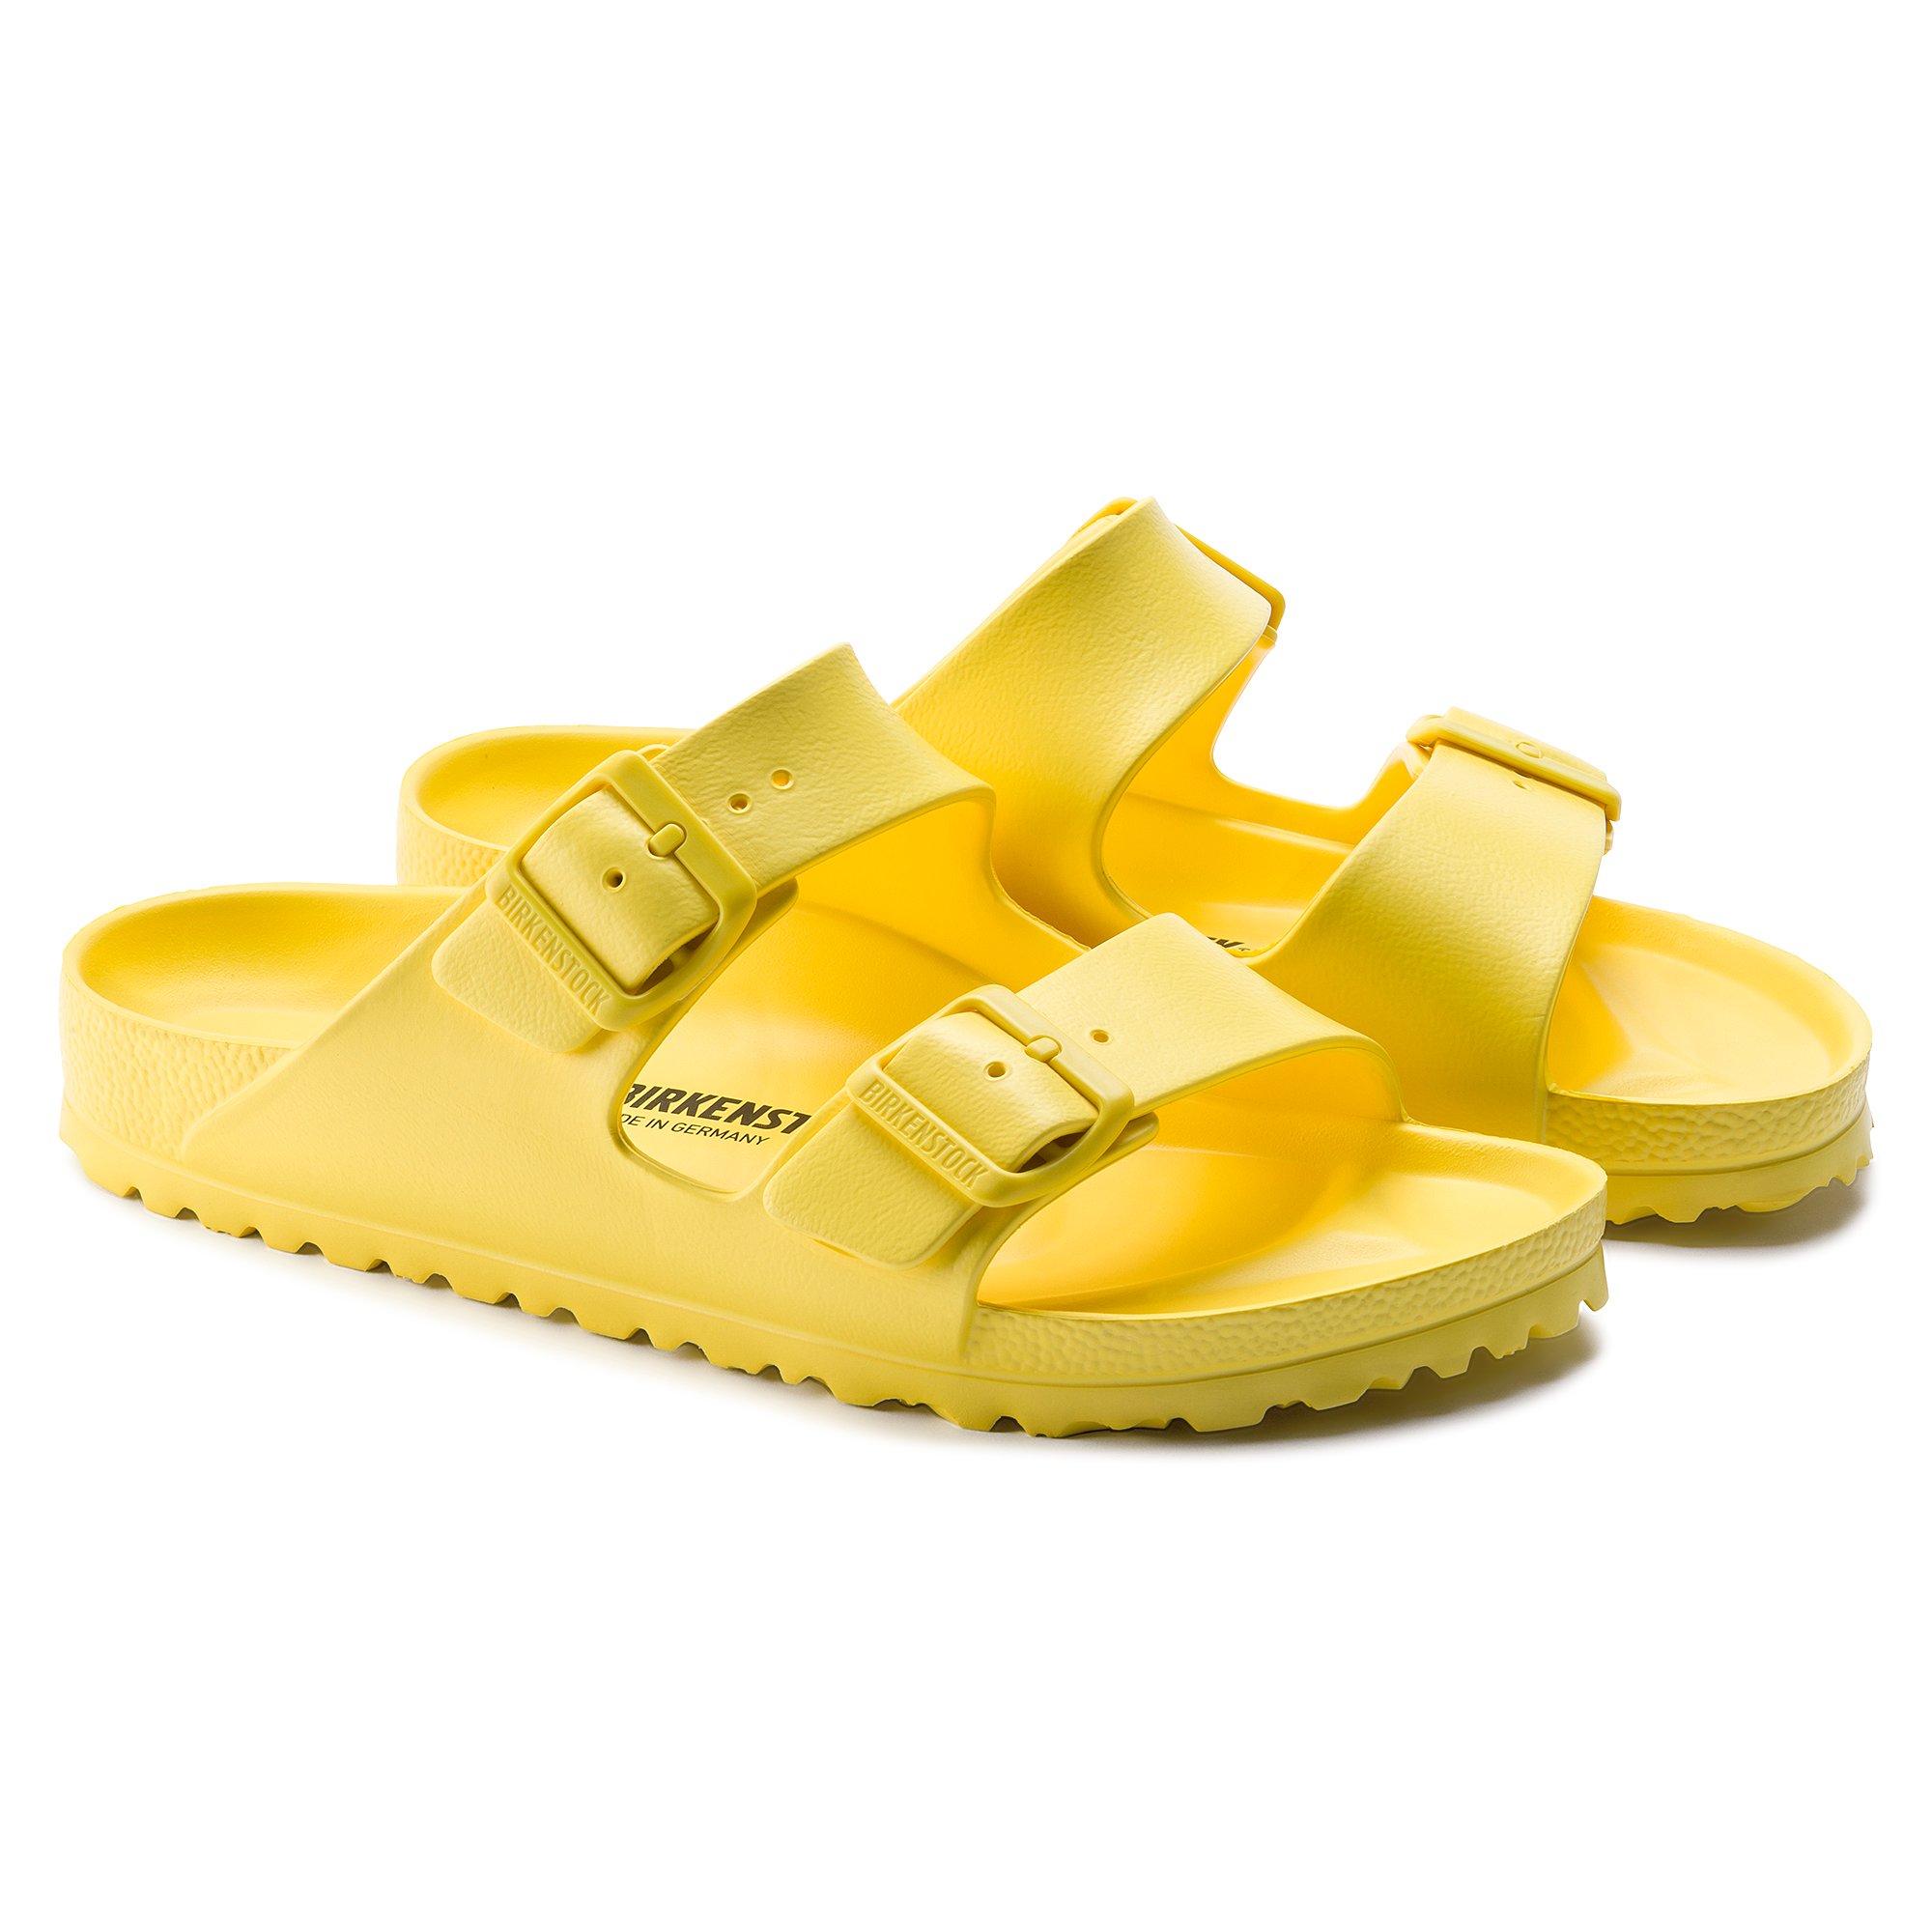 birkenstock women's arizona essentials eva sandals yellow